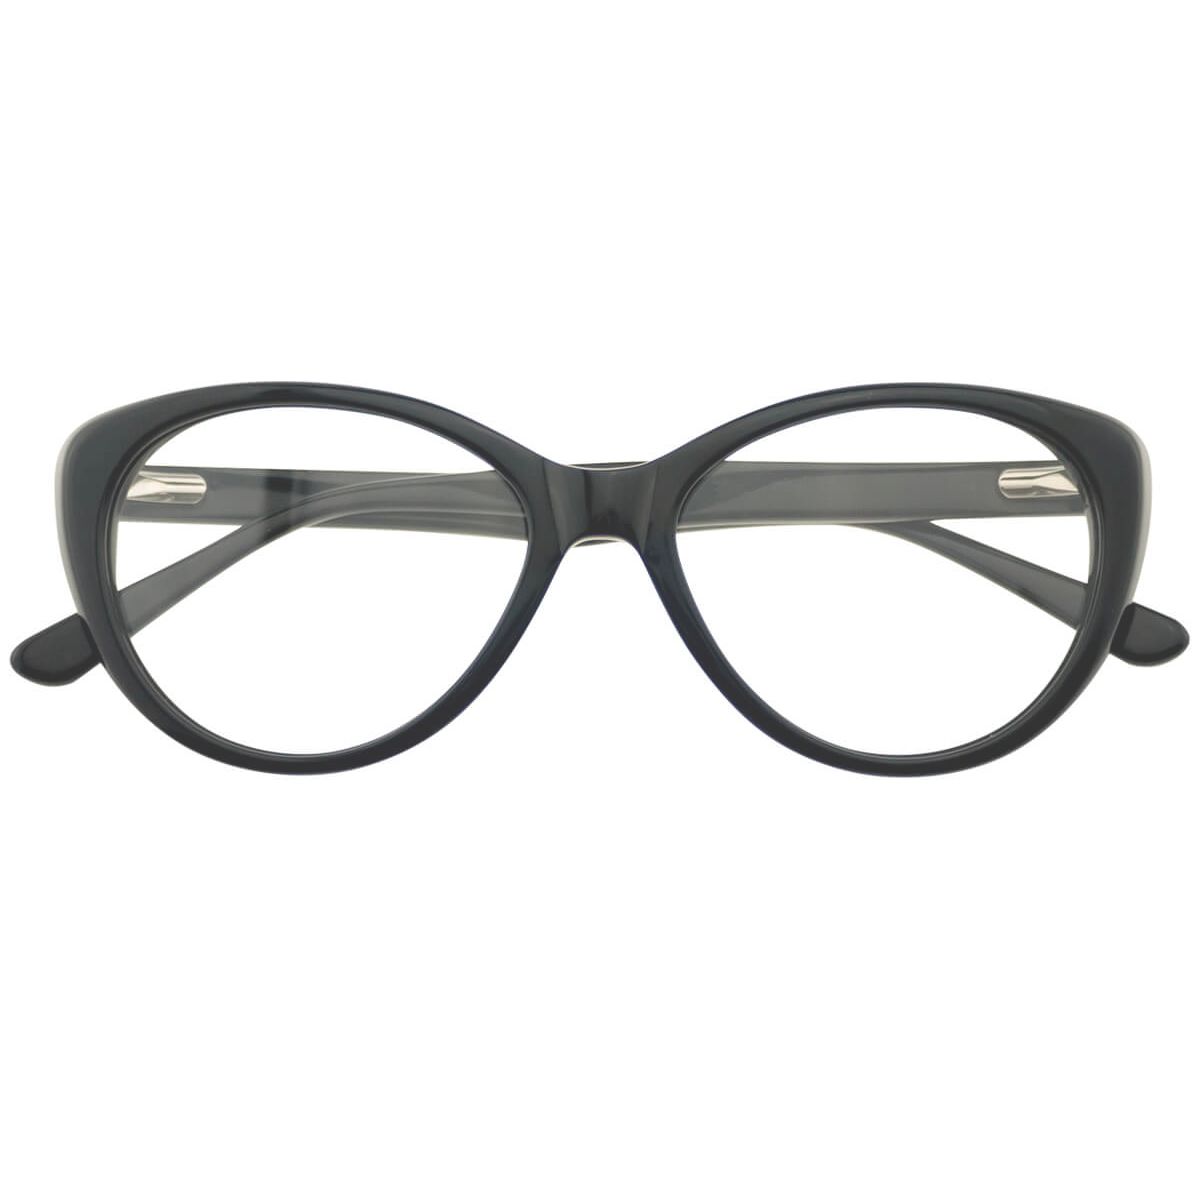 ACG-10007 Cat-eye Butterfly Black Eyeglasses Frames | Leoptique